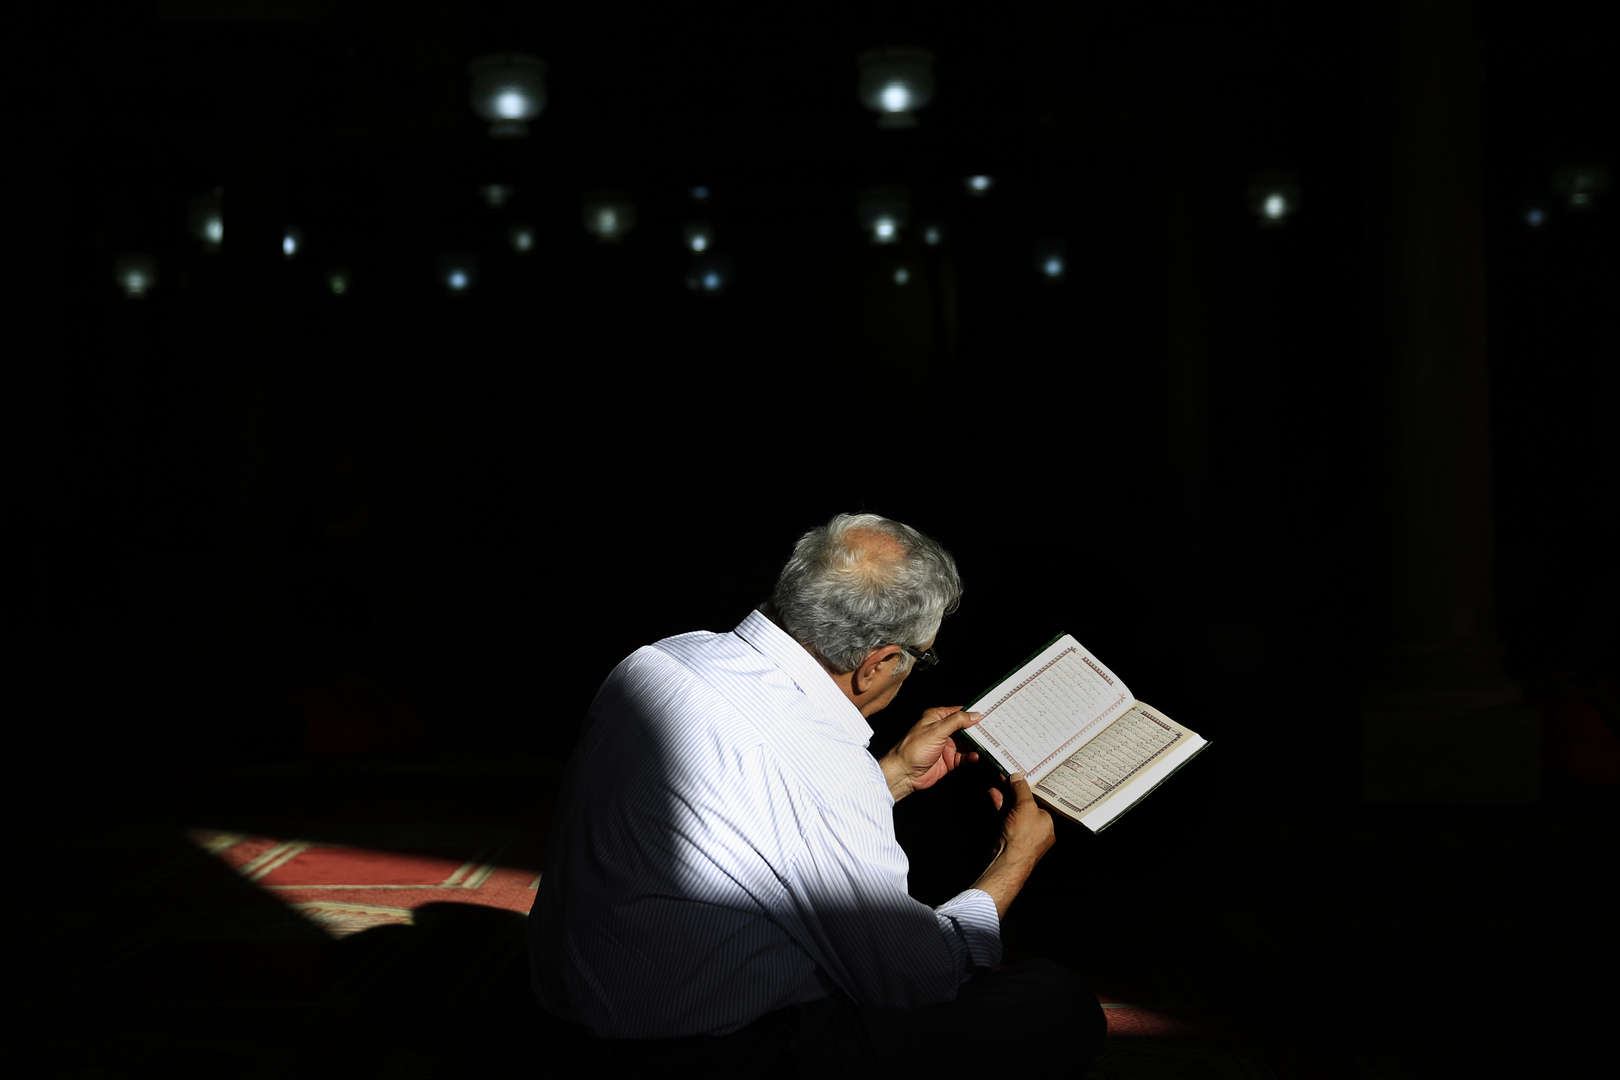  نقابة قراء القرآن في مصر: نحن بصدد تعديل قوانين لاقتصار القراءة على الأعضاء فقط